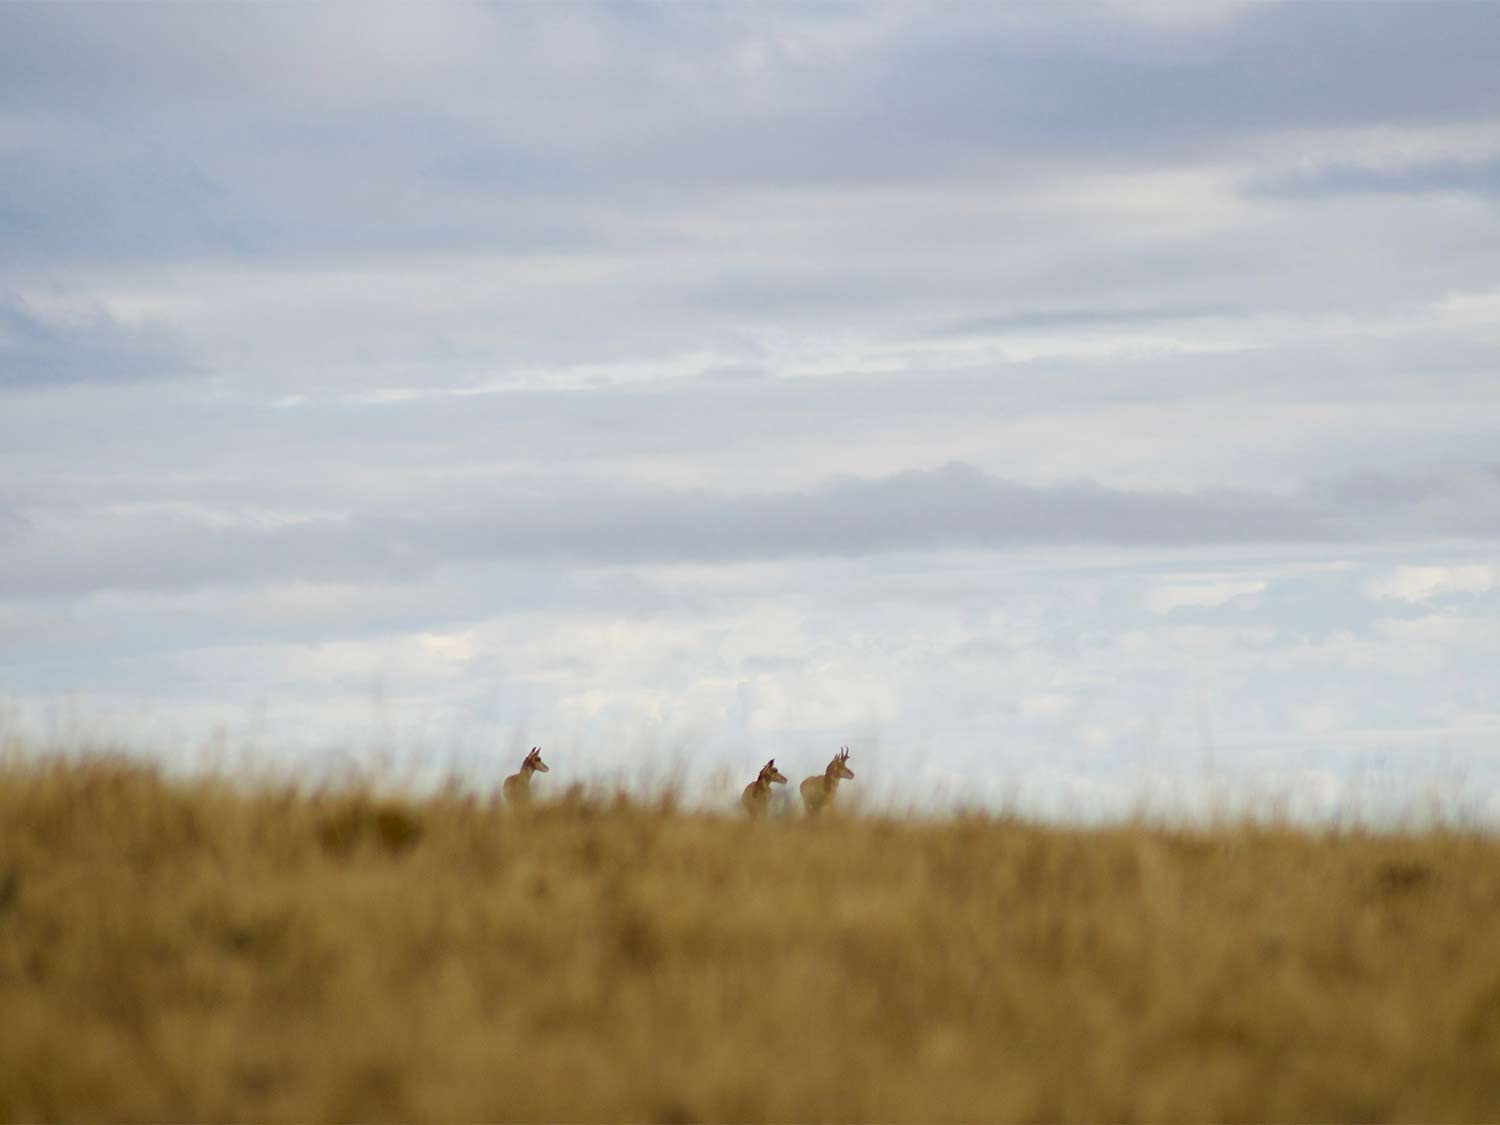 A group of hunters walking through an open field of tall grass.